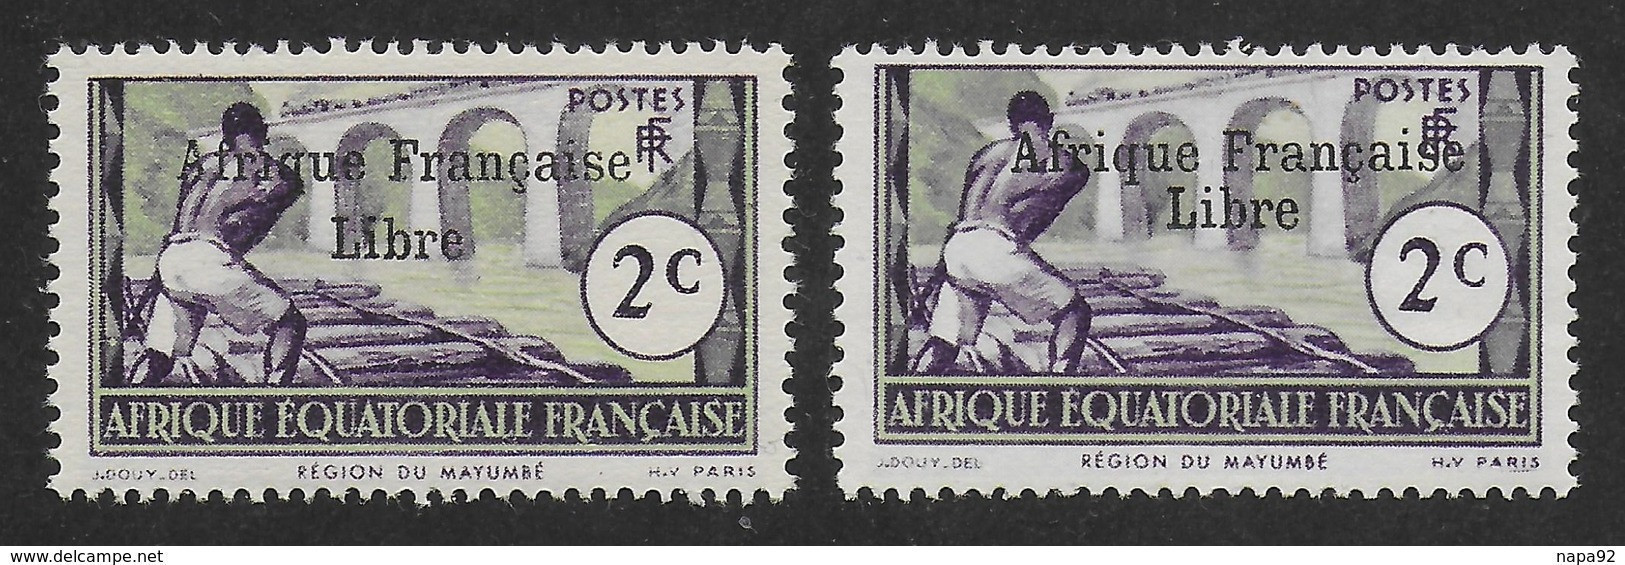 AFRIQUE EQUATORIALE FRANCAISE - AEF - A.E.F. - 1941 - YT 157** - 2ème TIRAGE - Nuovi